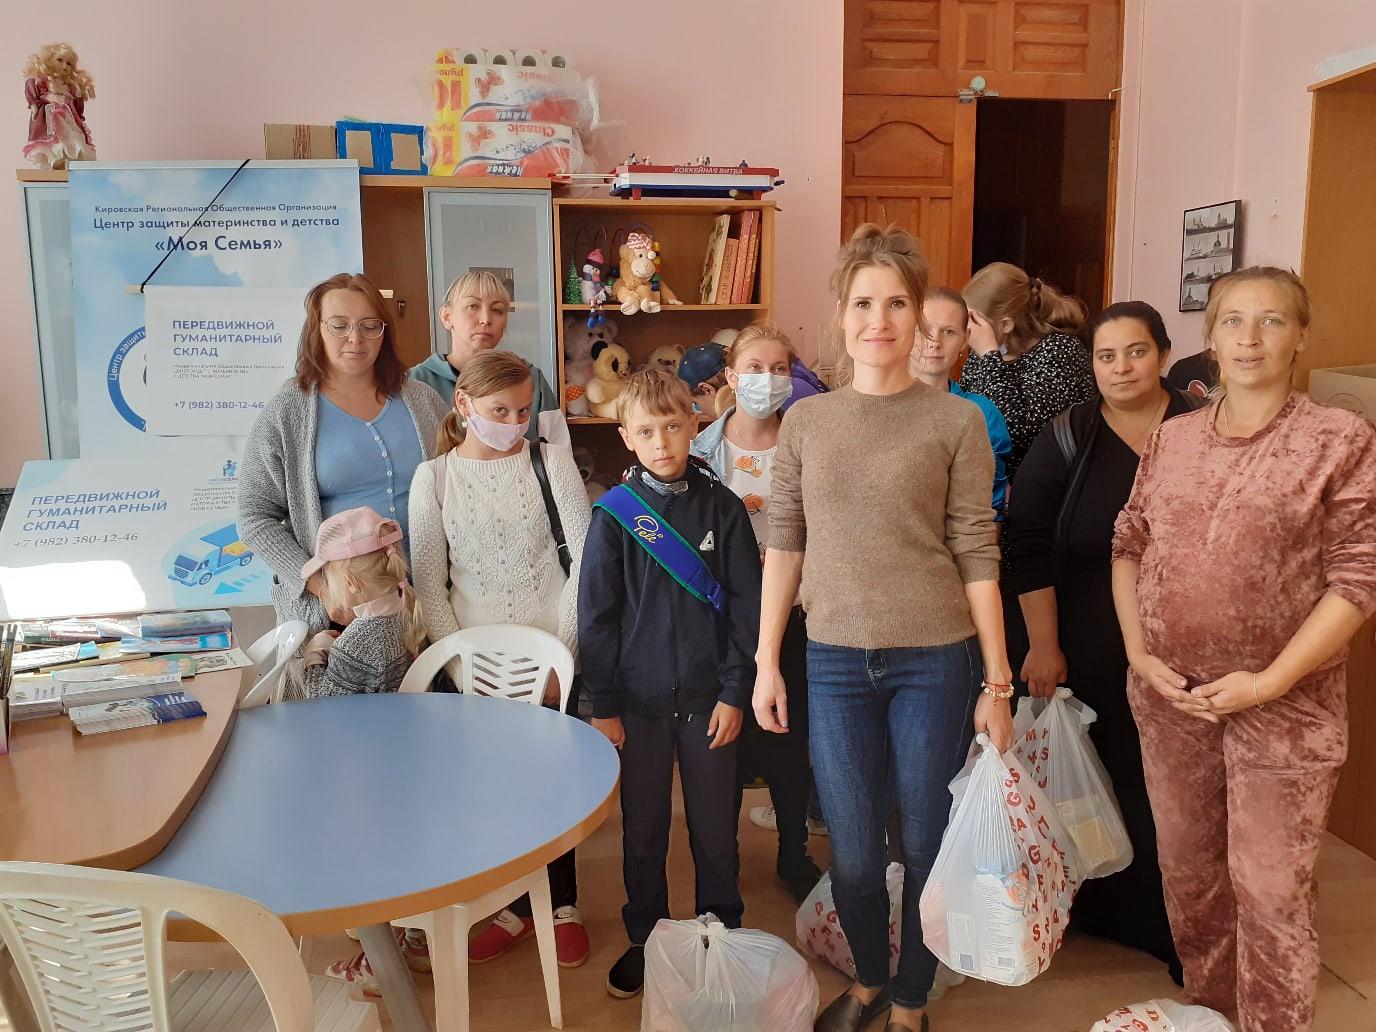 36 семей из Кирова и Слободского в рамках акции Передвижной Гуманитарный склад получили продуктовую помощь!